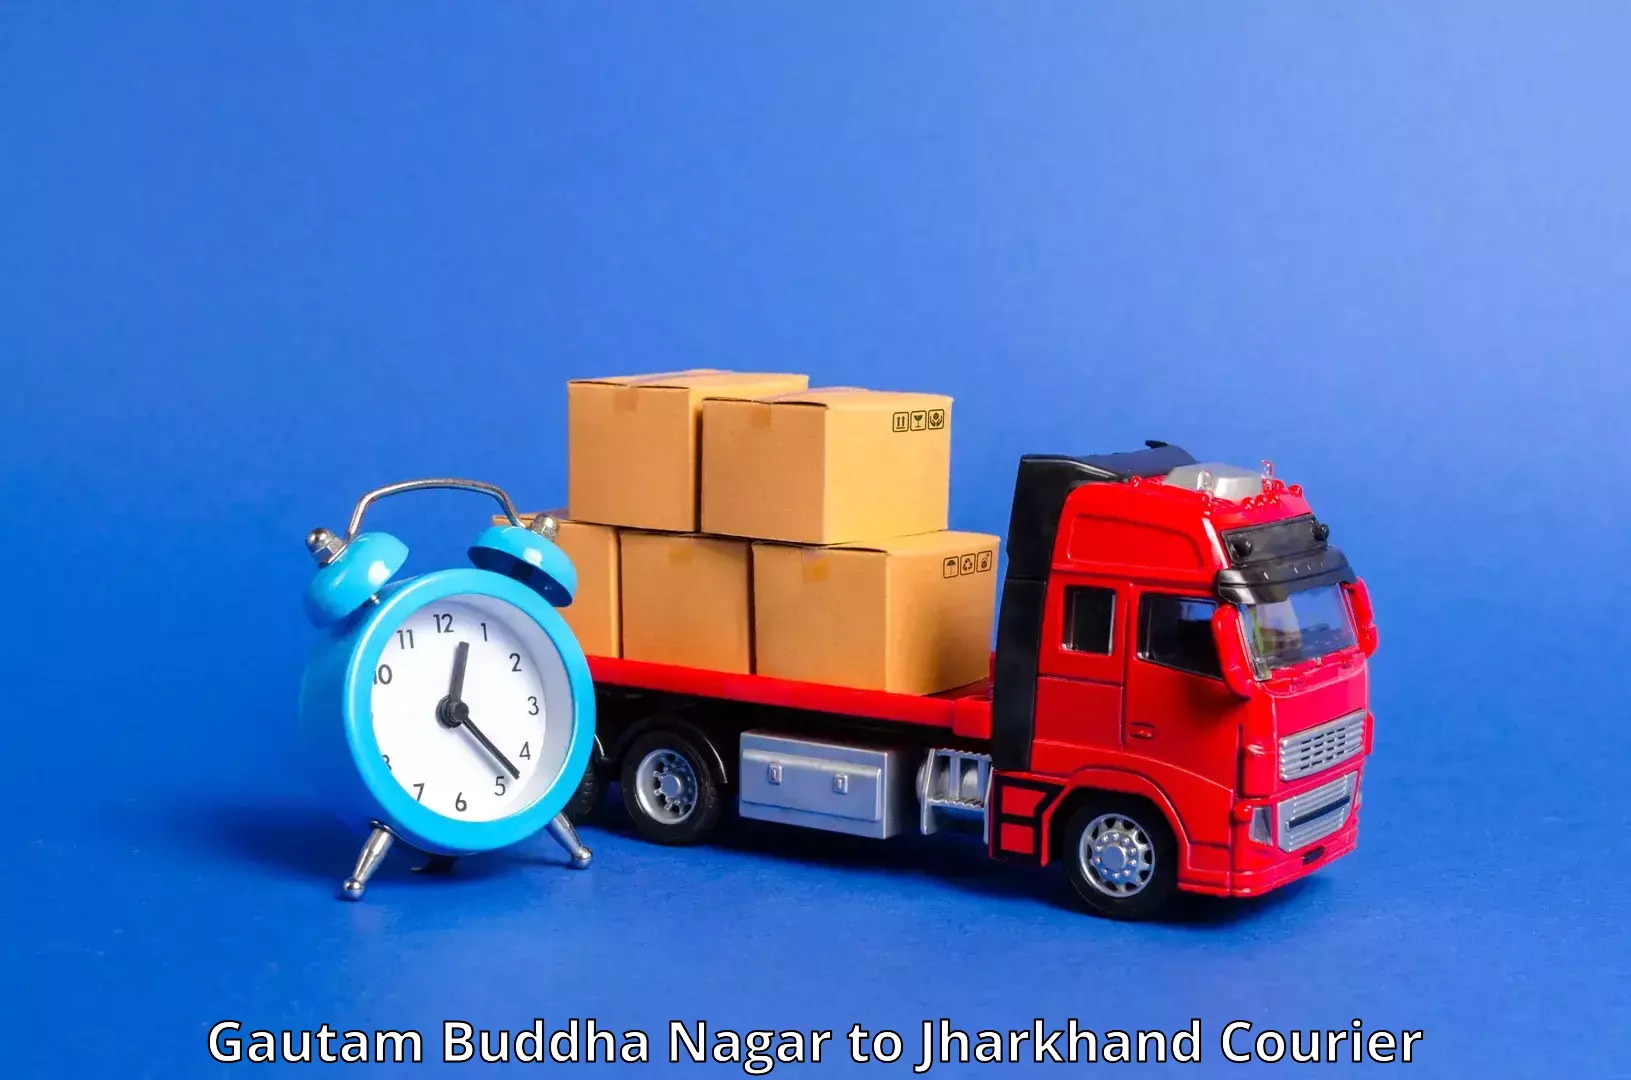 Shipping and handling Gautam Buddha Nagar to Hariharganj